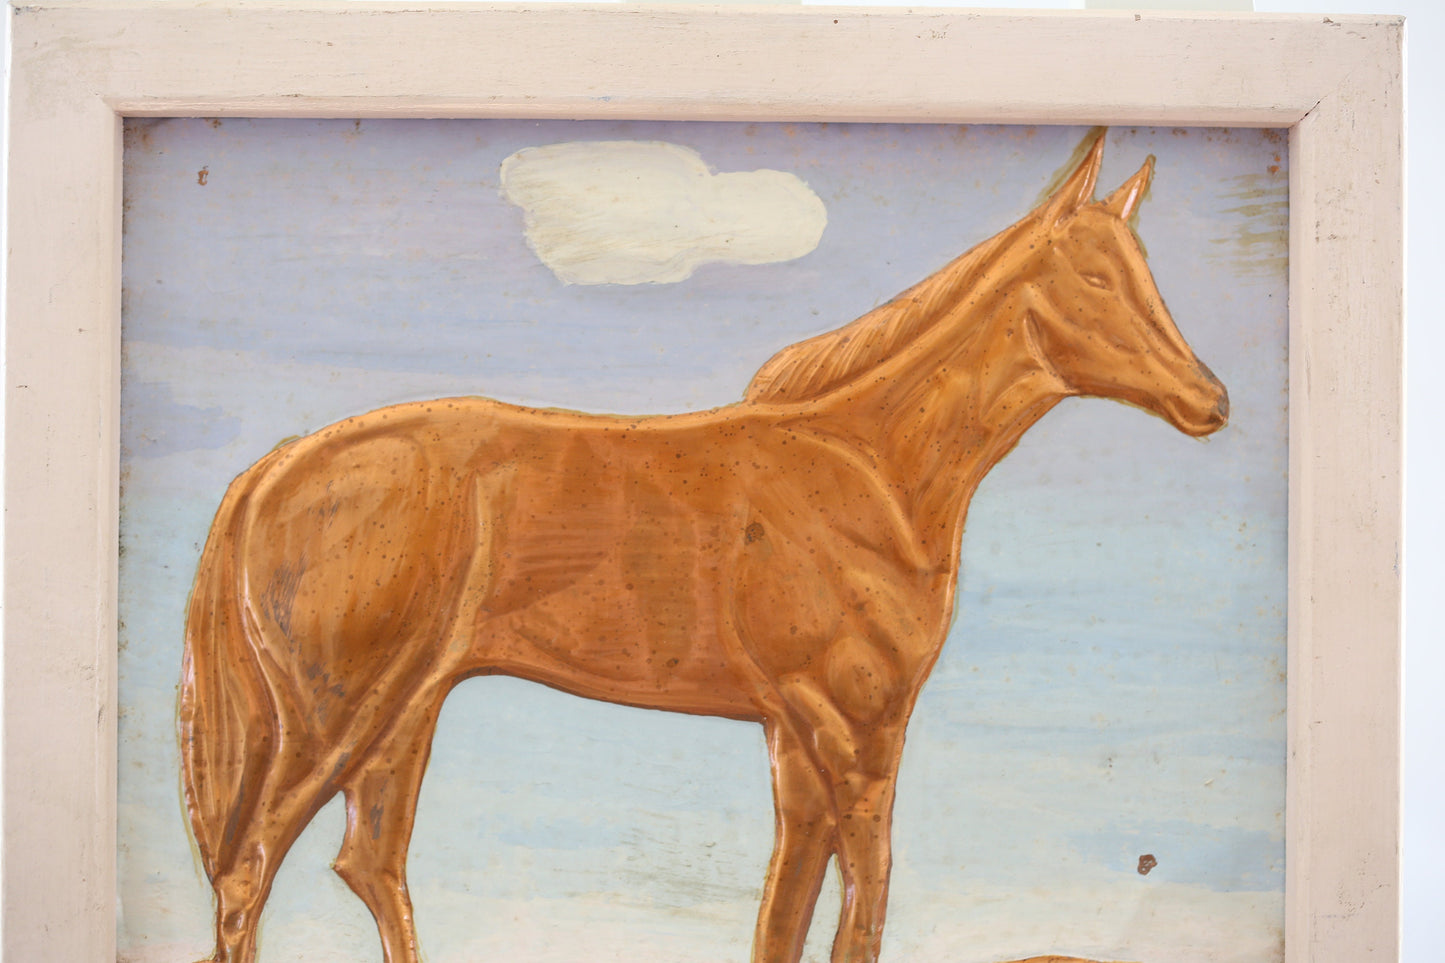 Western Copper Horse Relief Framed Signed Original 1961